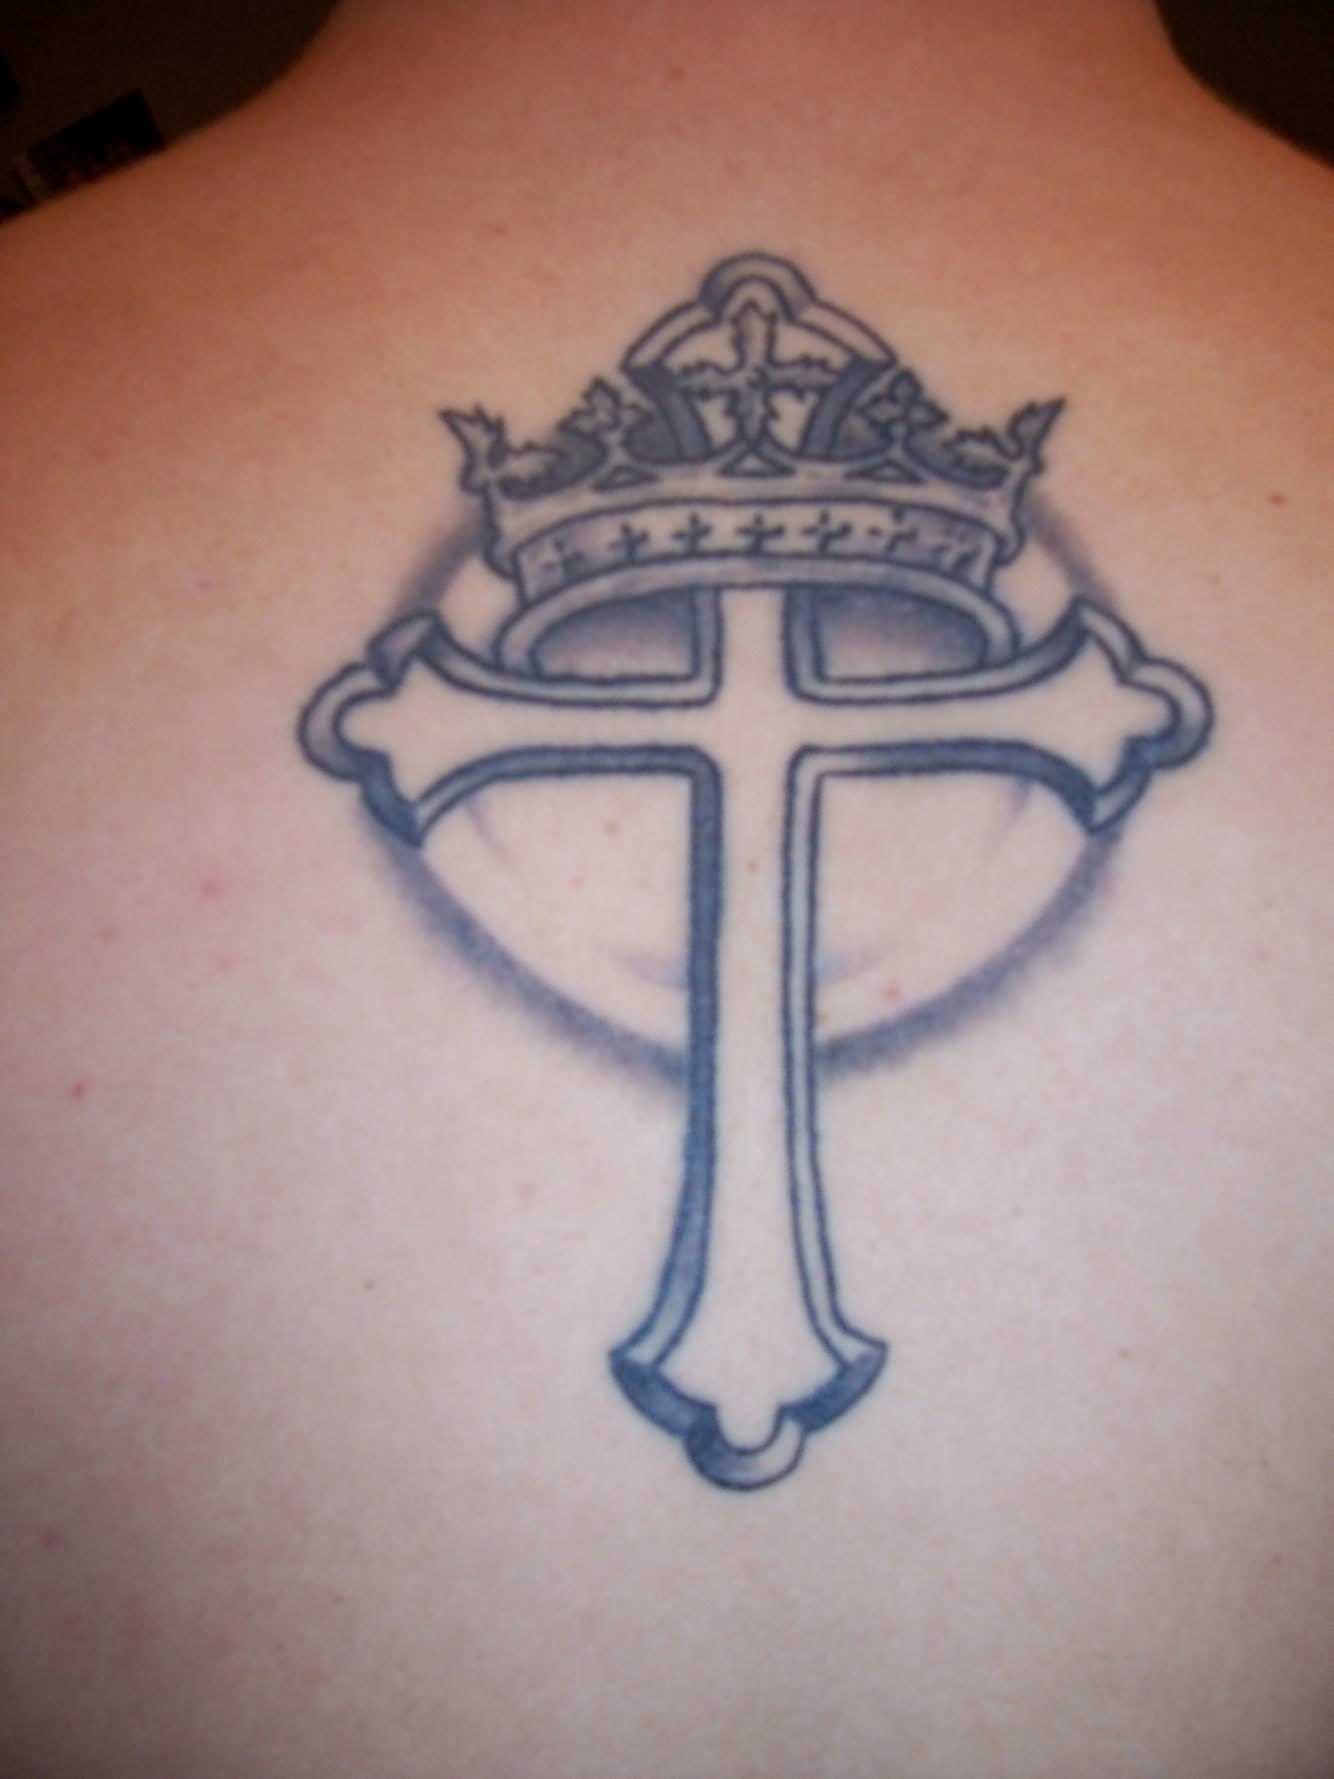 Tatuagem de coroa na cruz na coluna vertebral do homem, e a